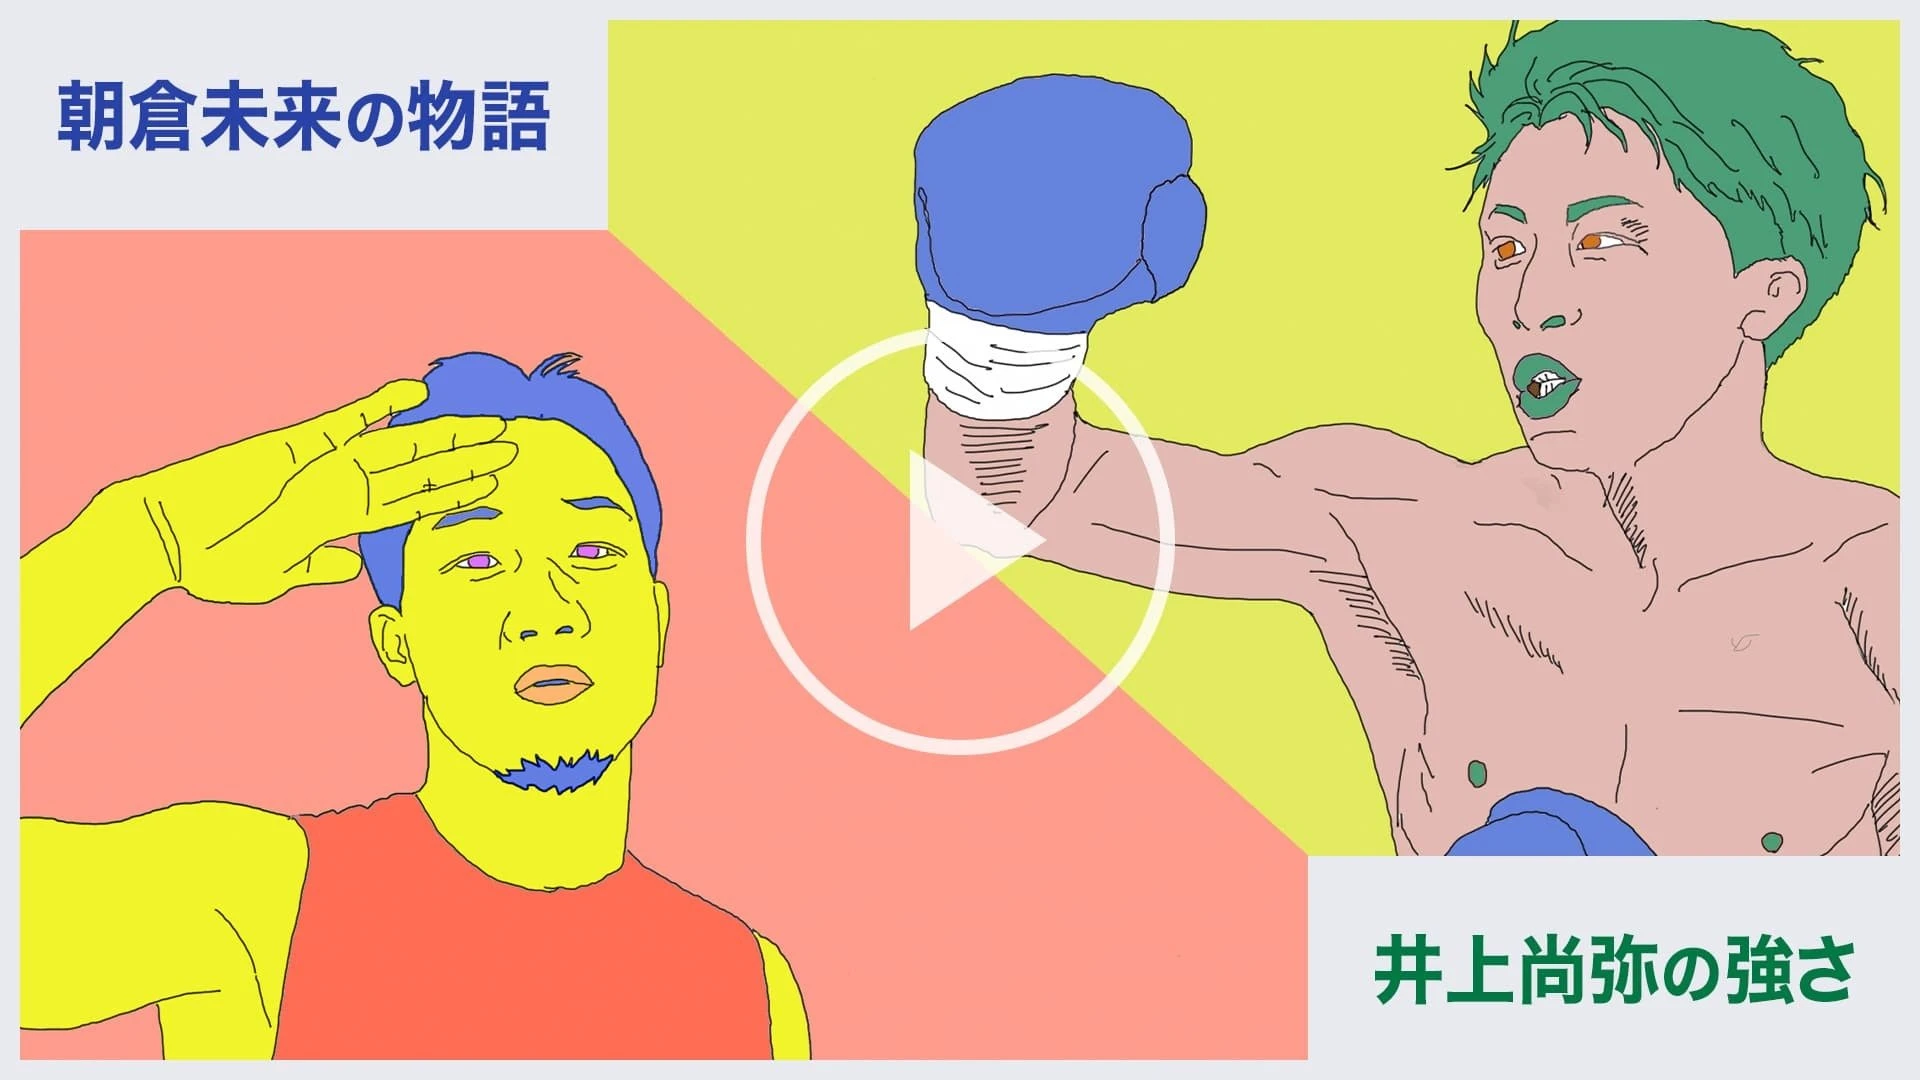 井上尚弥の「強さ」と朝倉未来の「物語」 YouTubeは格闘技をどう変えるか.jpg